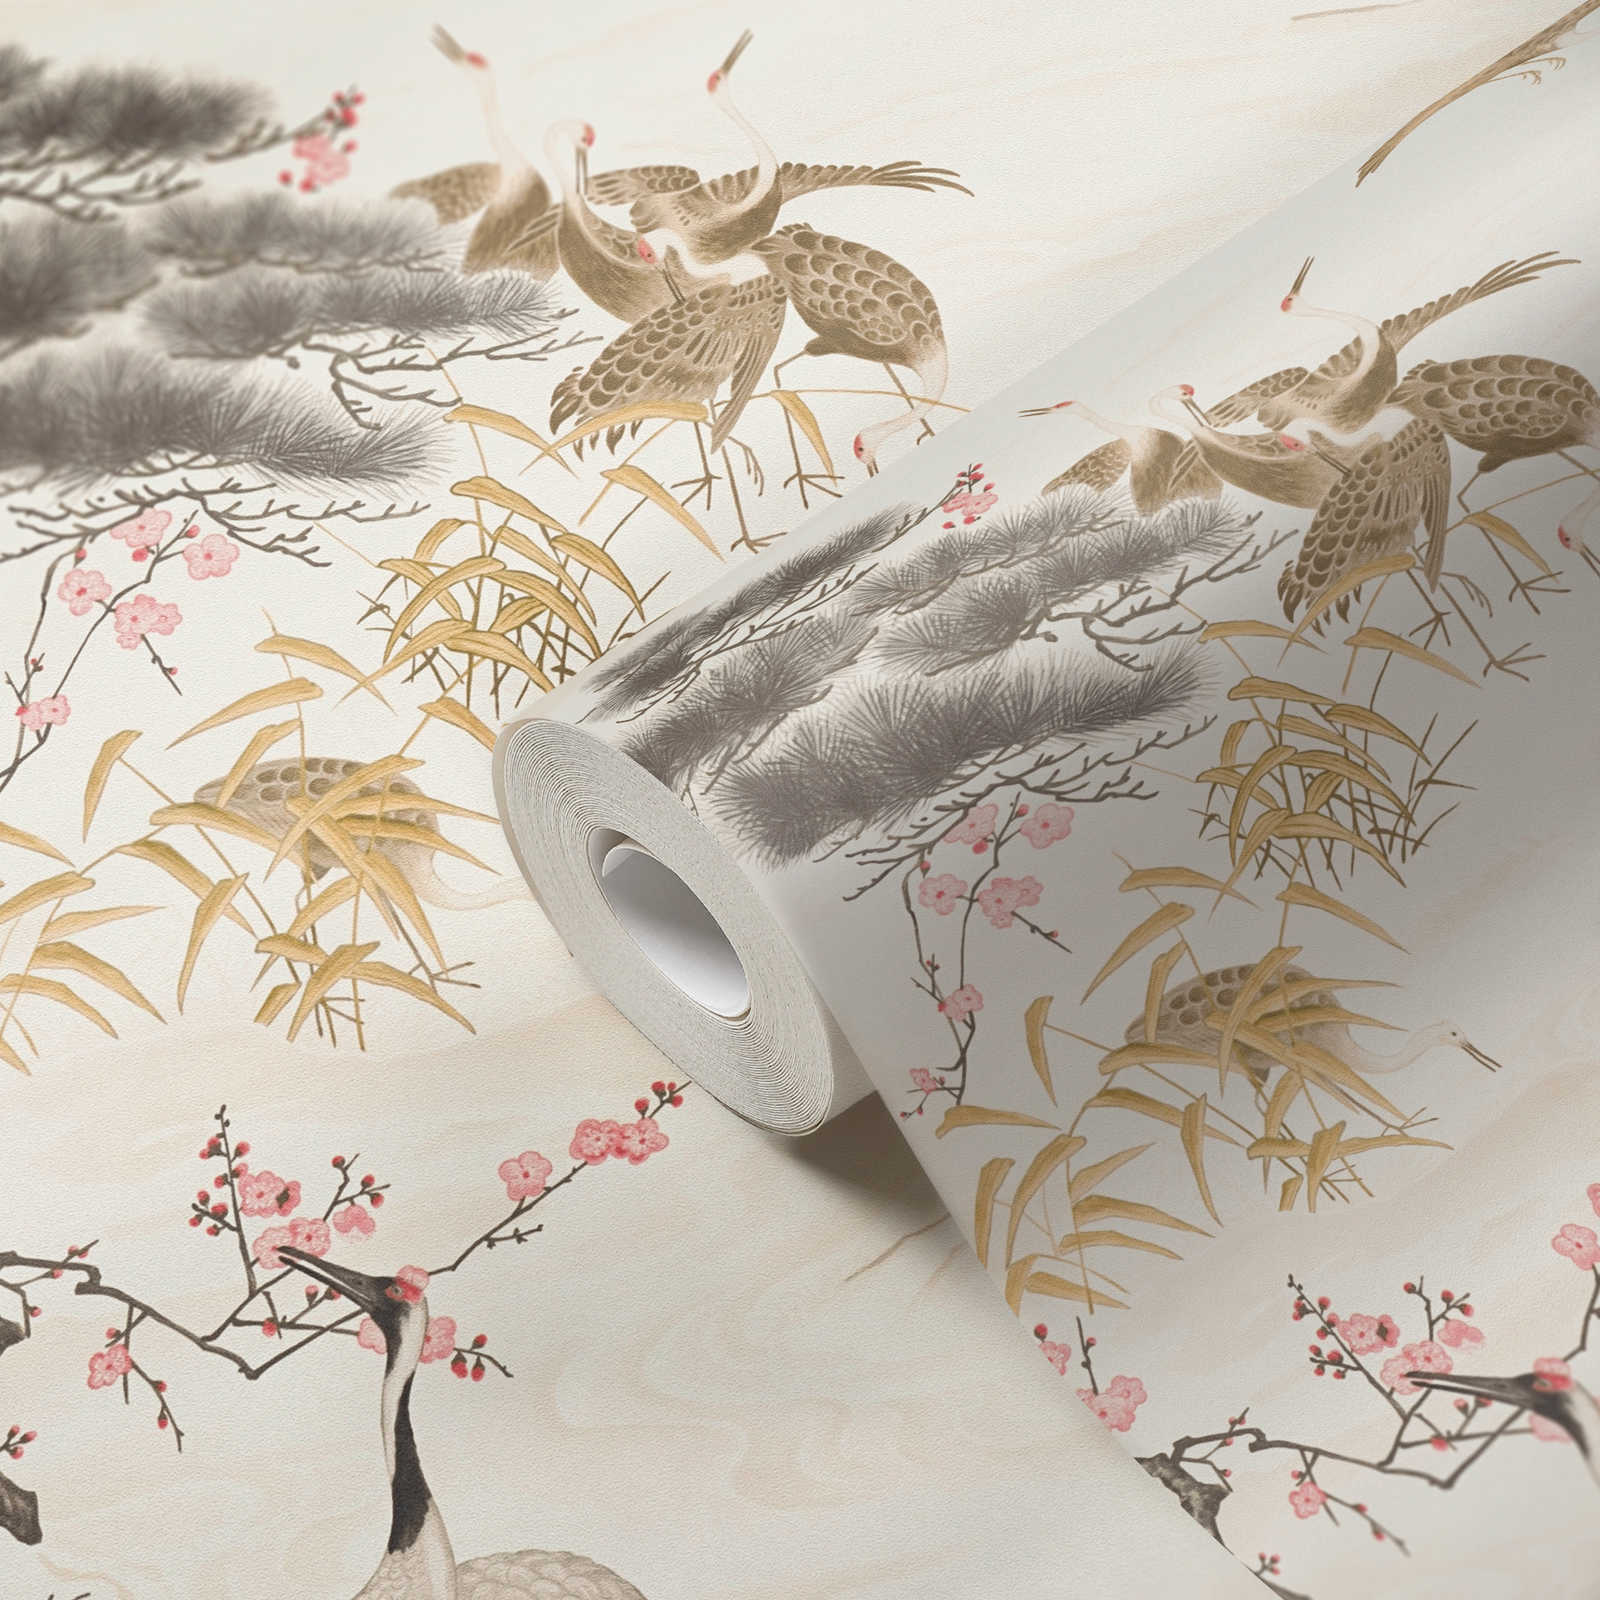             Papier peint grue de style asiatique avec motif animalier - crème
        